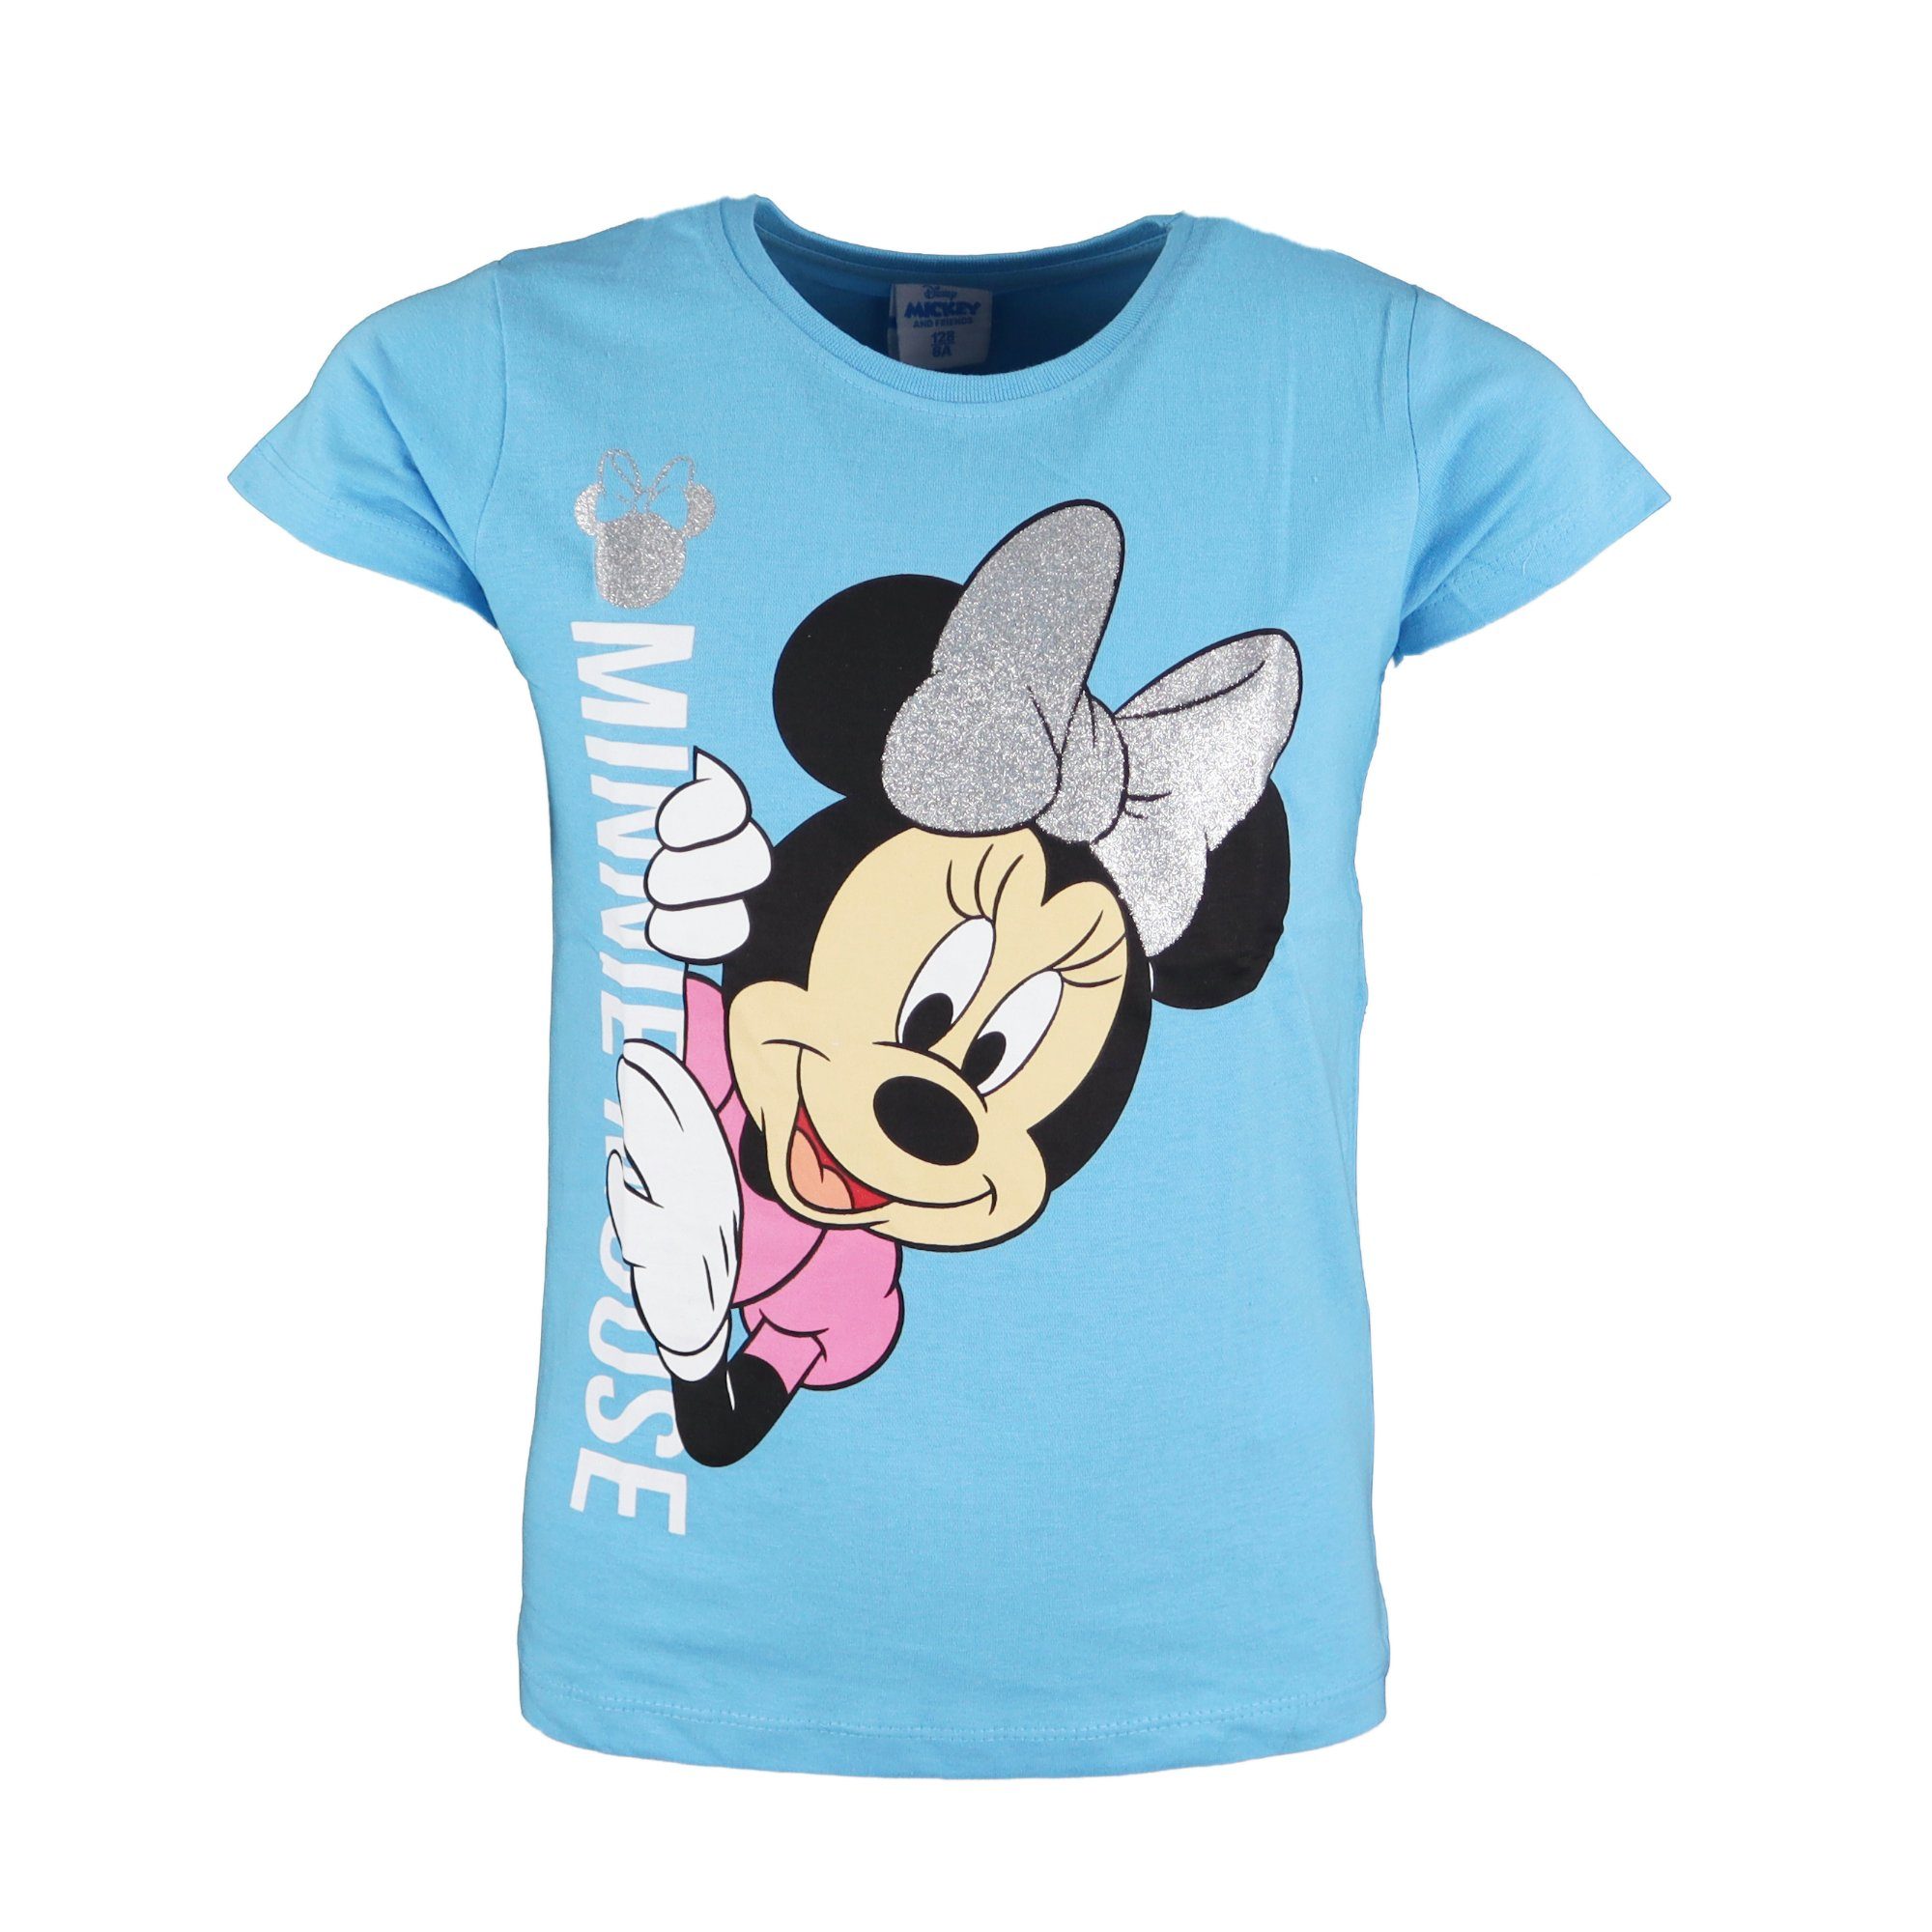 Disney Minnie T-Shirt Kinder Shirt Mouse Mädchen 100% Blau Baumwolle Minnie Gr. 104 bis 134, Maus